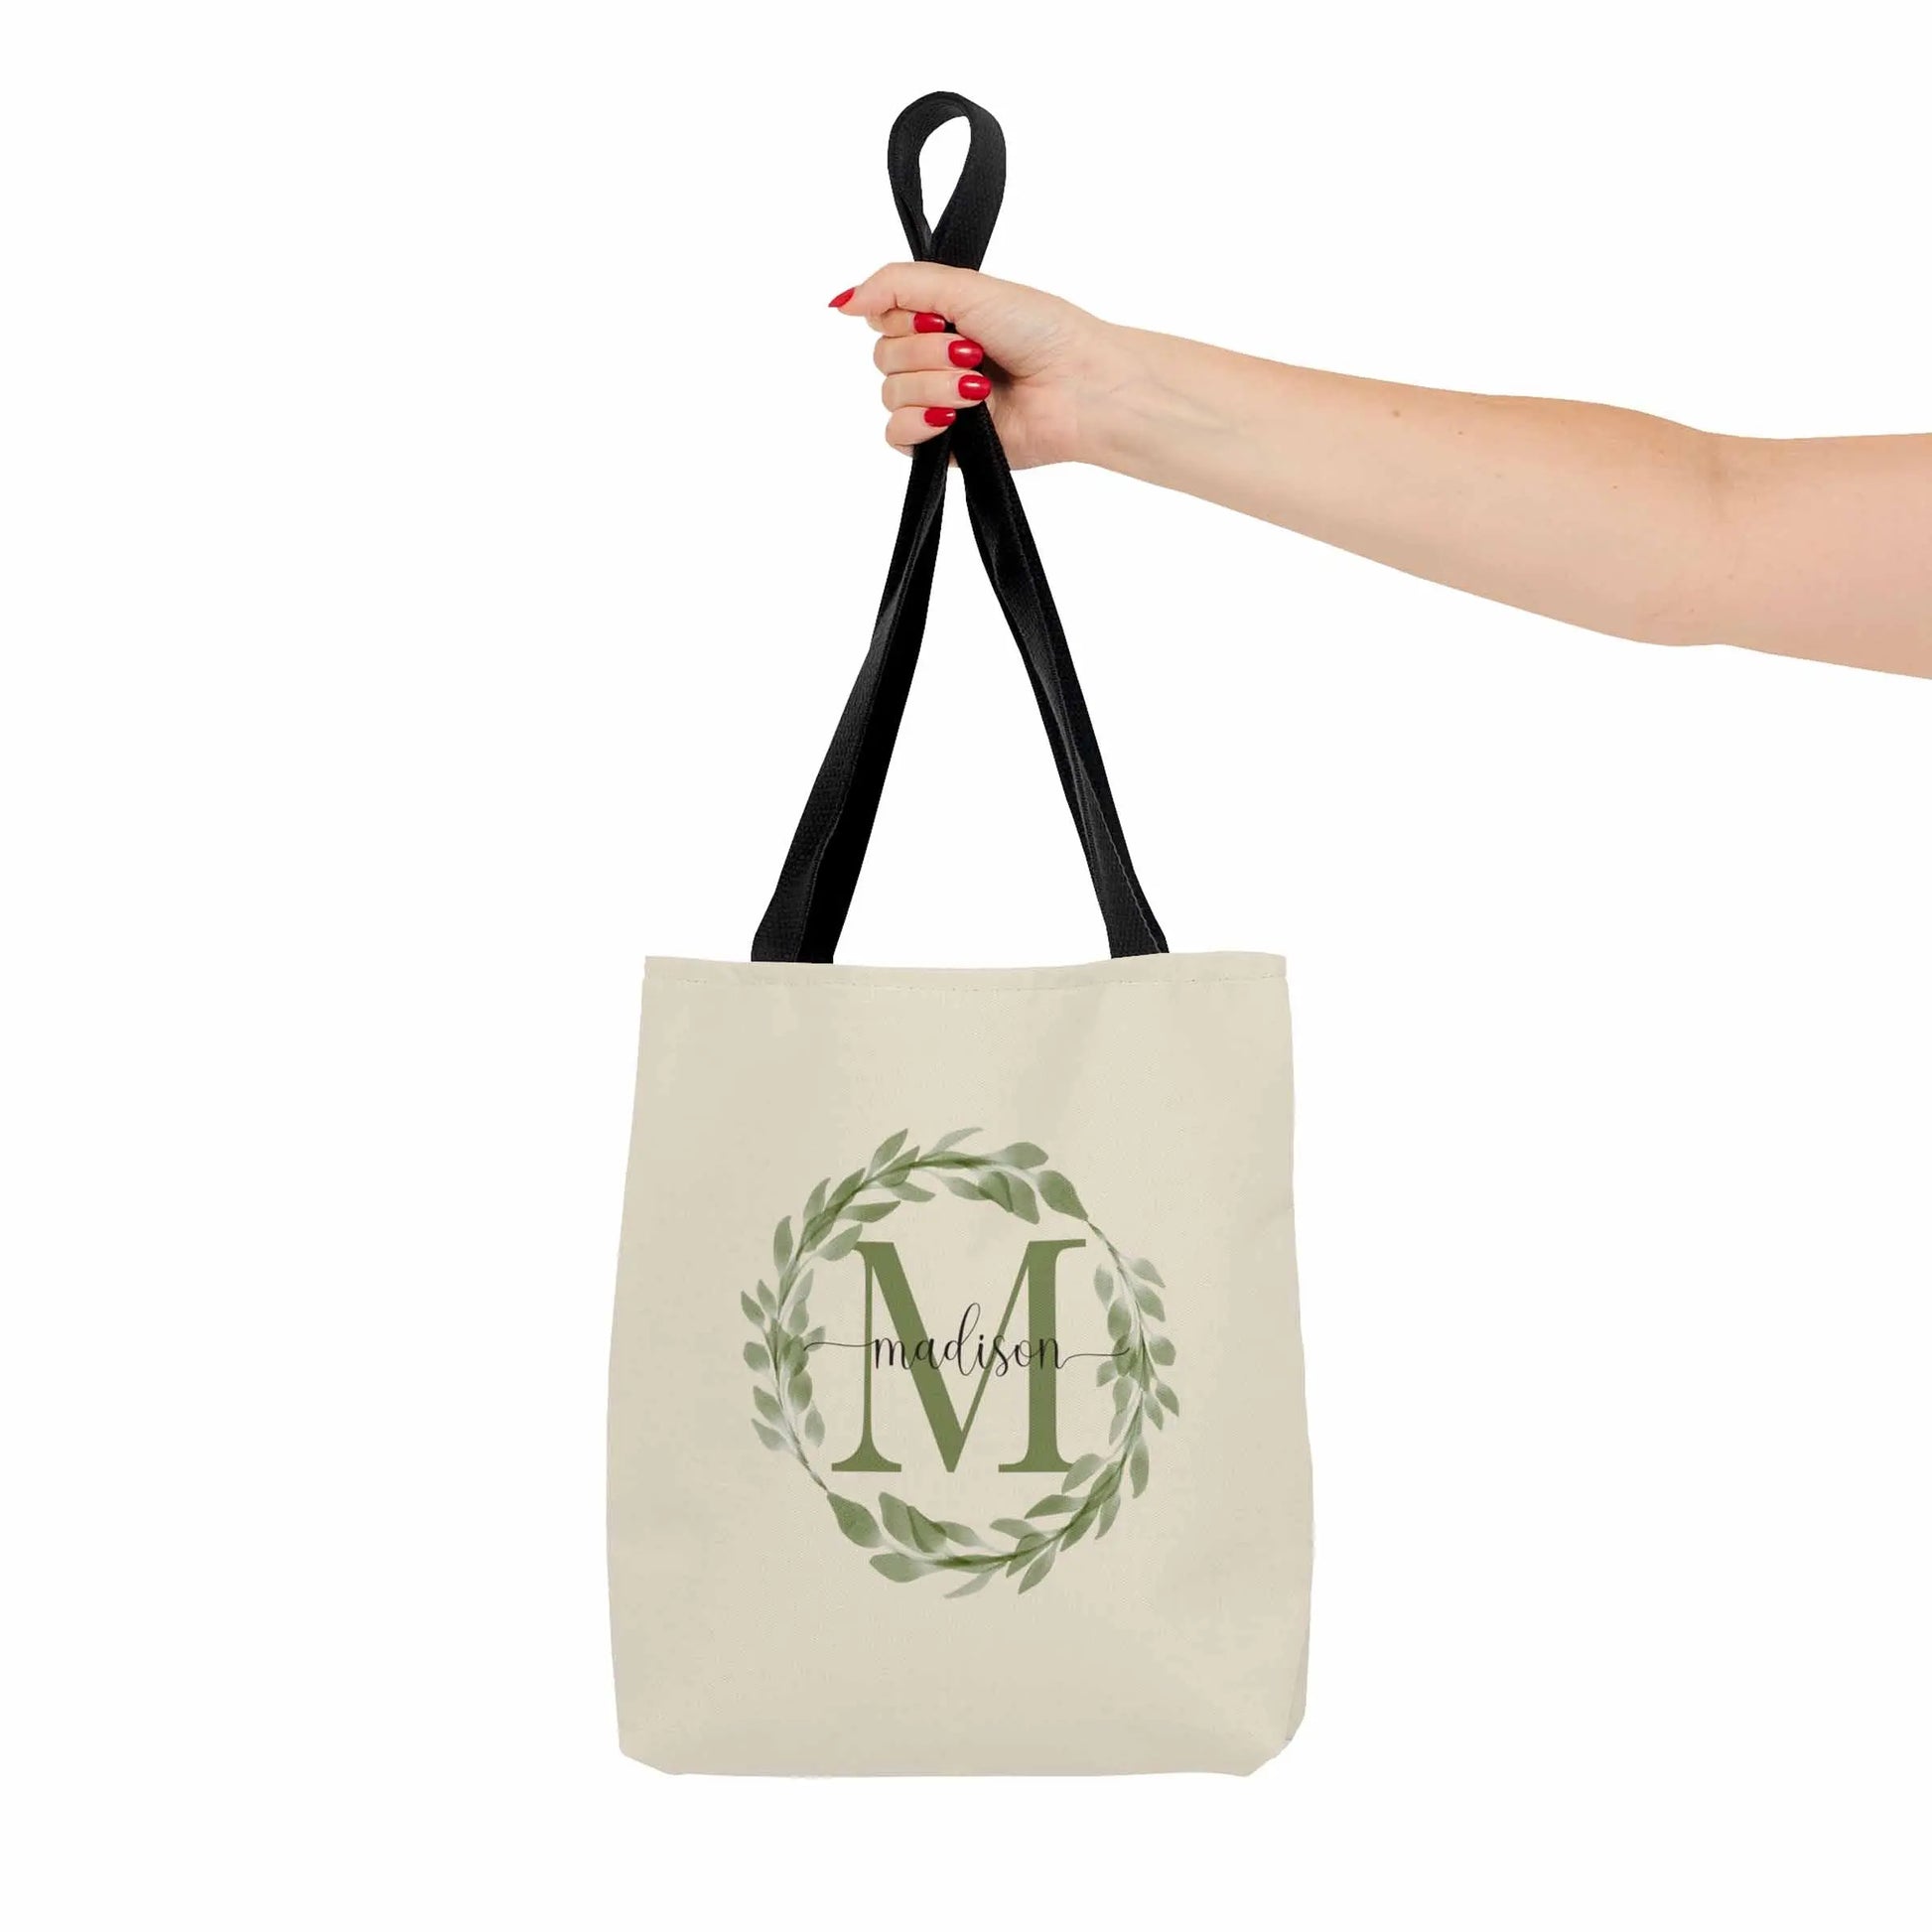 Monogram Name Tote Bag, Personalized Tote Bags, Bridesmaid Tote